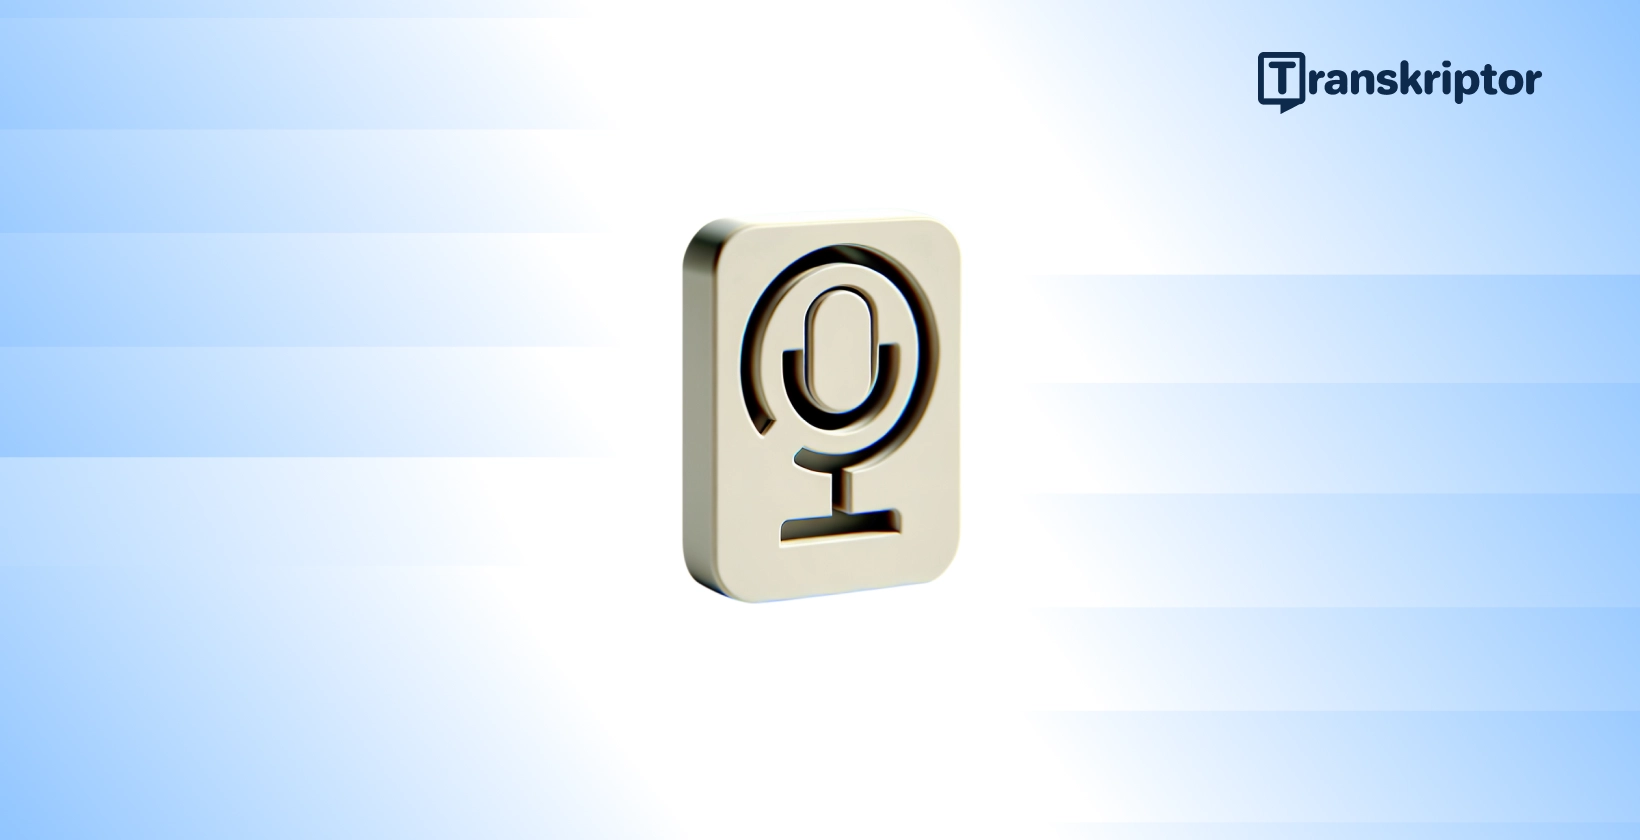 Ένα μικρόφωνο με αριθμό 9, που αντιπροσωπεύει τη μεταγραφή αριθμητικών δεδομένων σε ηχογραφήσεις.